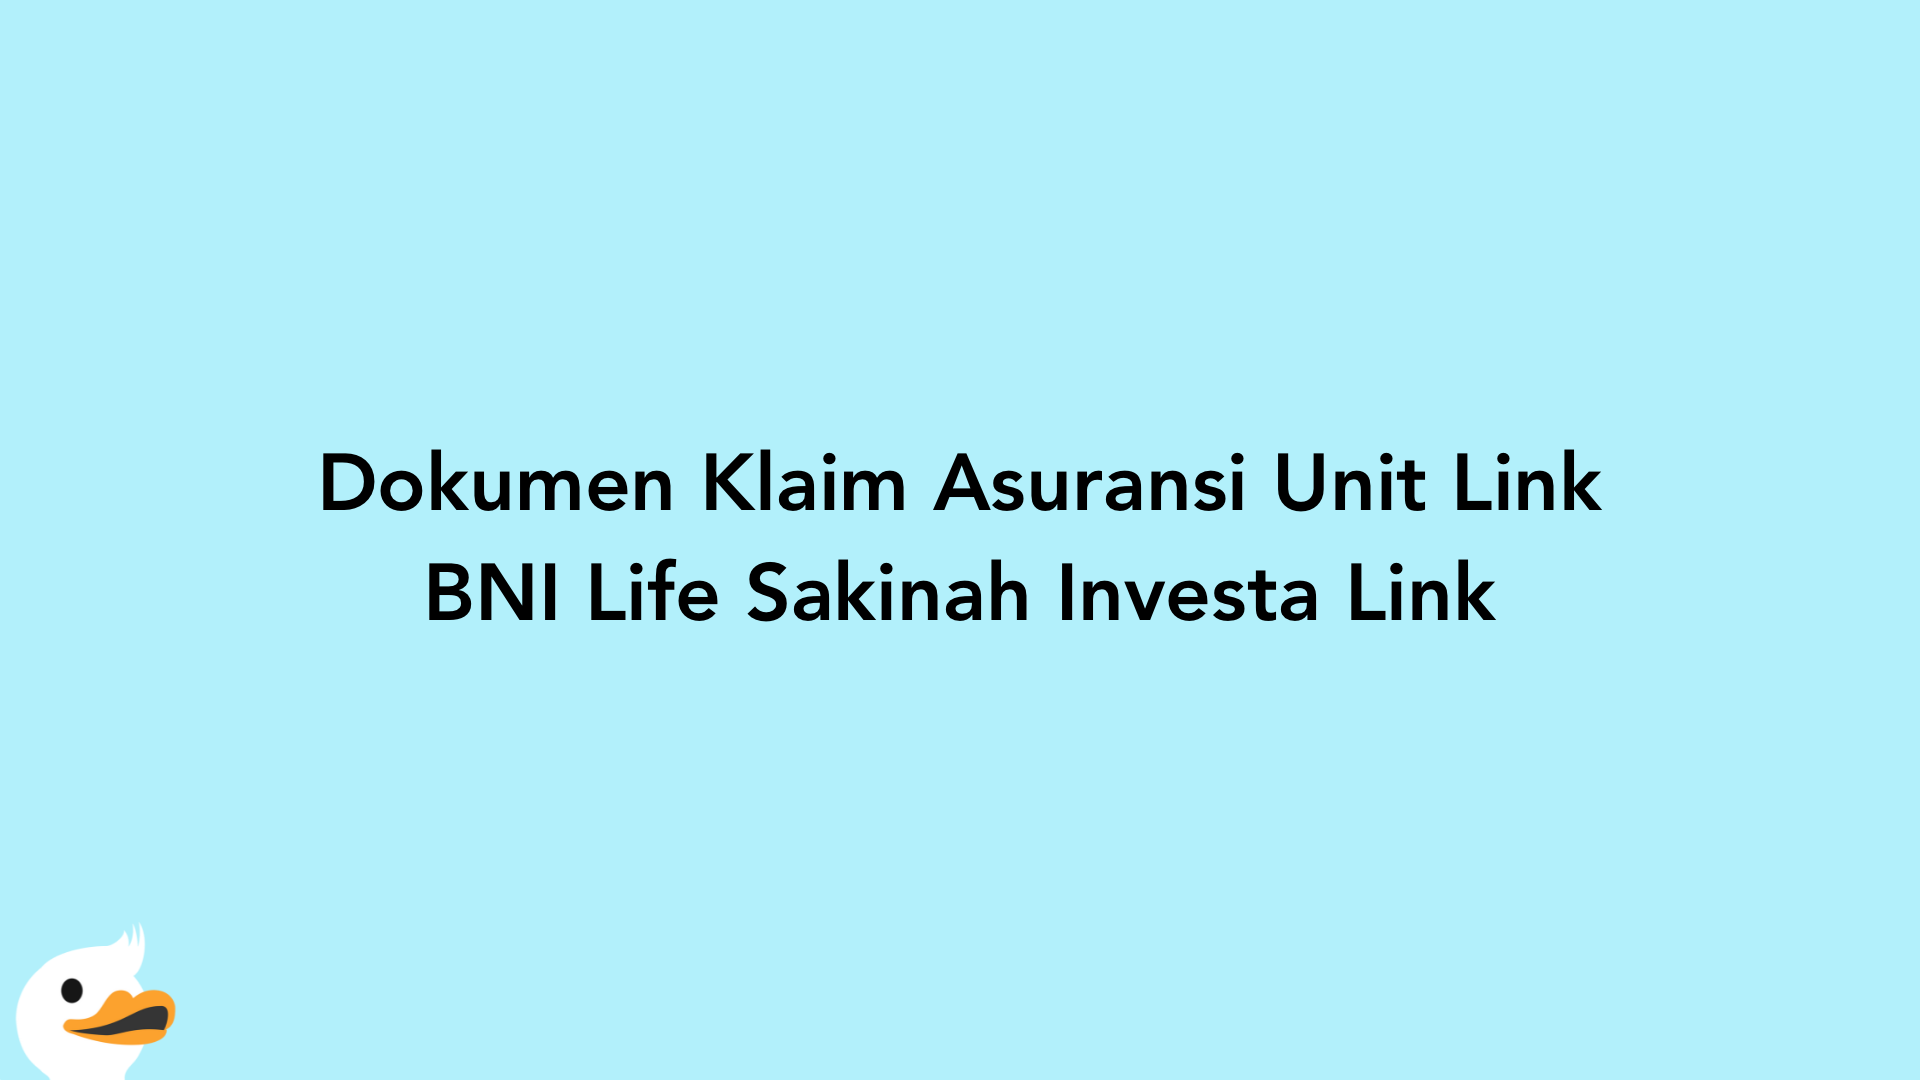 Dokumen Klaim Asuransi Unit Link BNI Life Sakinah Investa Link